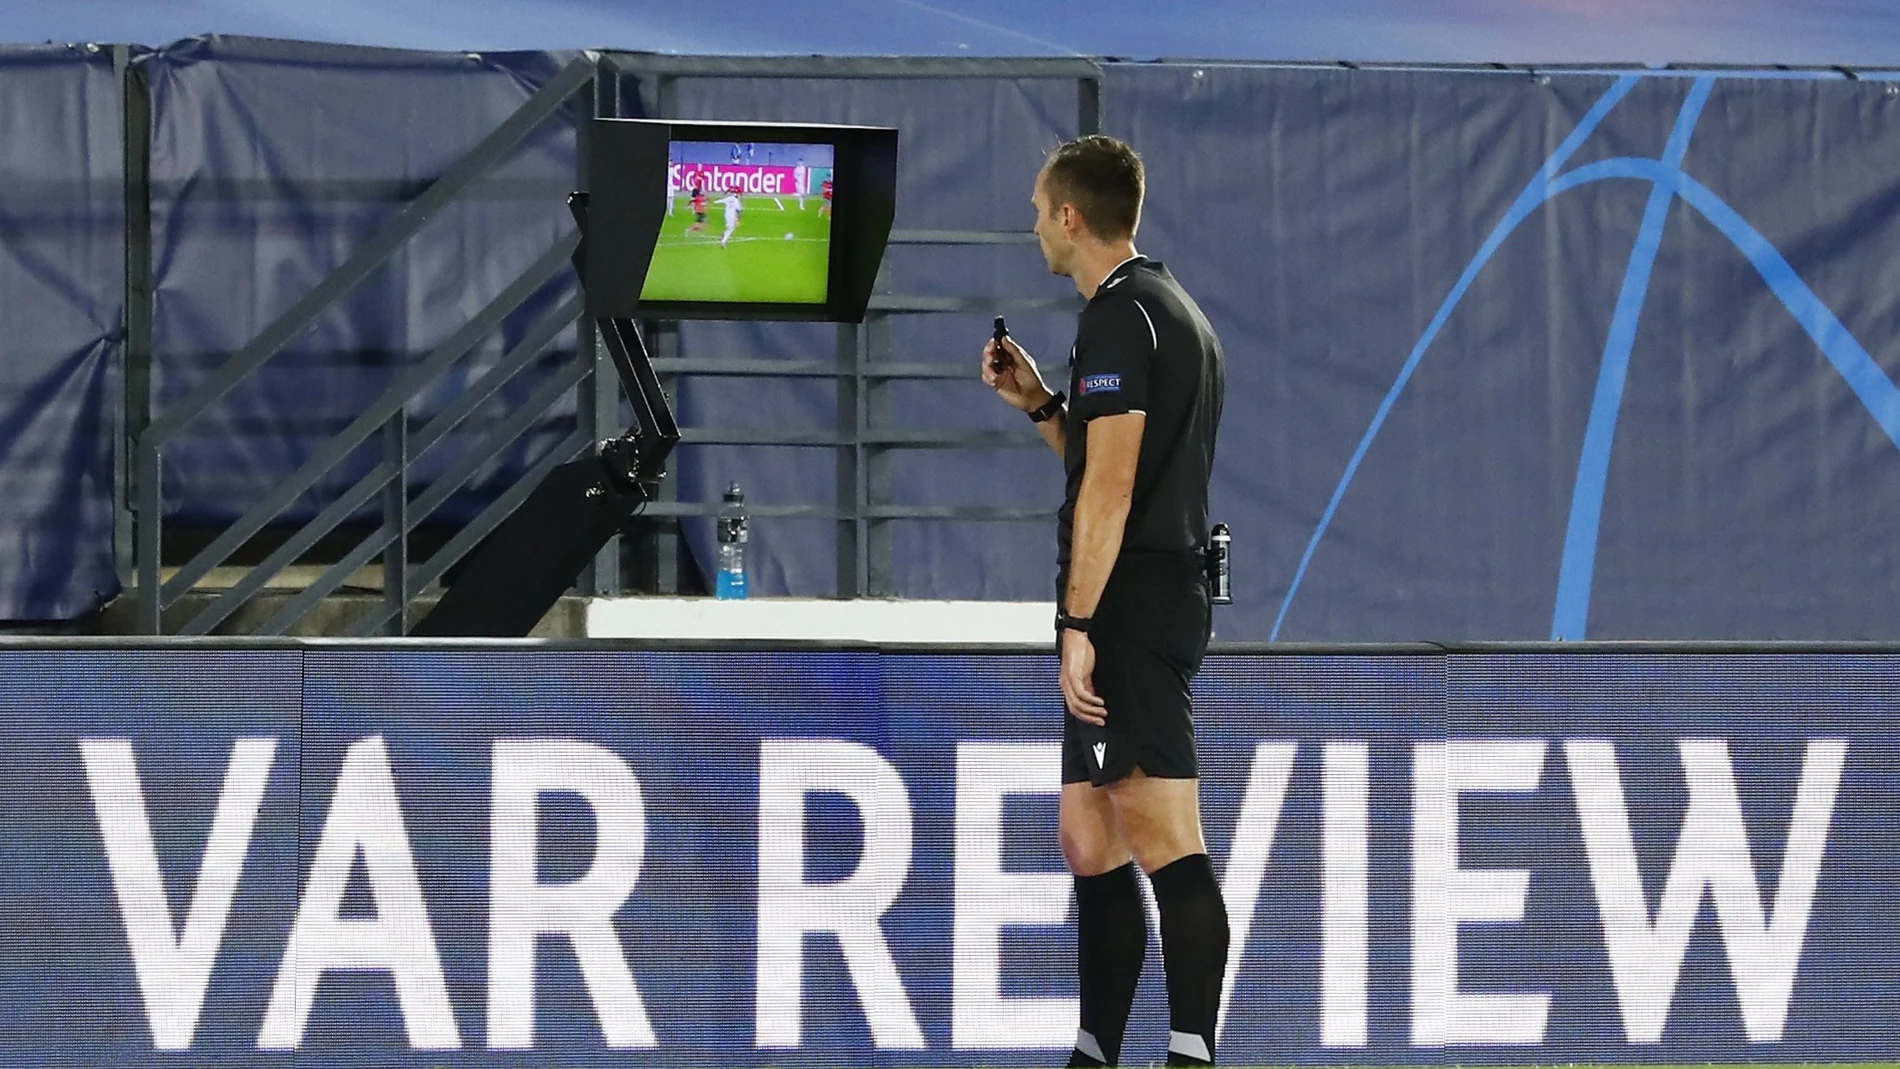 El árbitro Srdjan Jovanovic revisando una jugada en el VAR durante el partido que tuvo lugar entre el Real Madrid y el Shakhtar Donetsk Soccer en 2020. REUTERS/Juan Medina